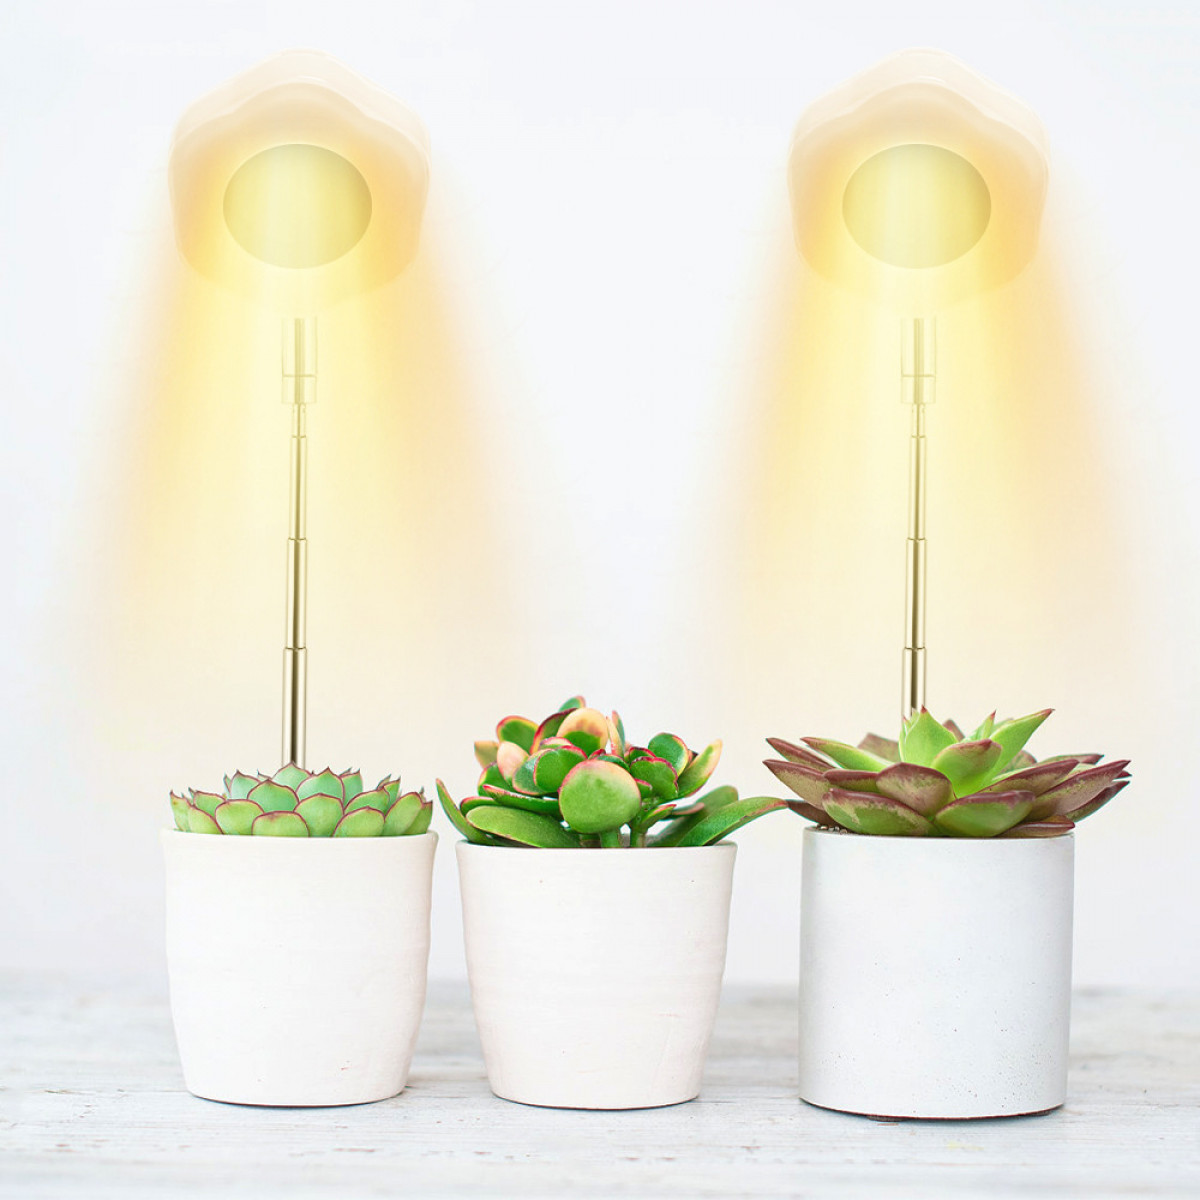 INF Hexagon Pflanzen Zimmerpflanzen Warmweiß/Weiß für Lights LED-Lampe Grow für